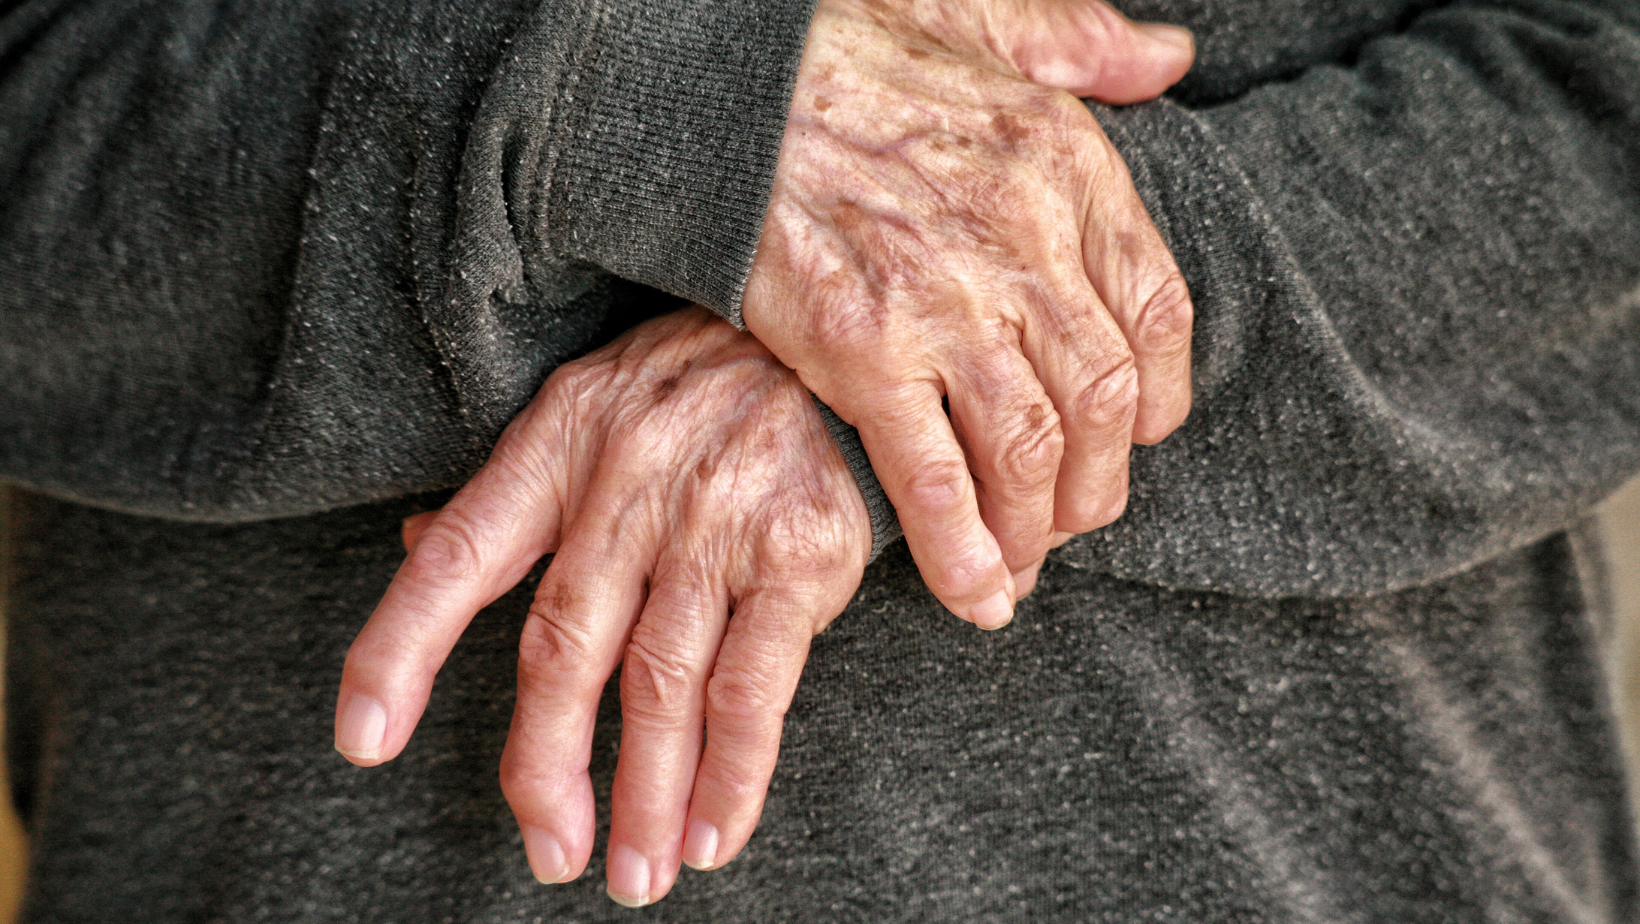 vrouw met pijnlijke gewrichten in hand door artrose behandeld door chiropractor specialist in artrose